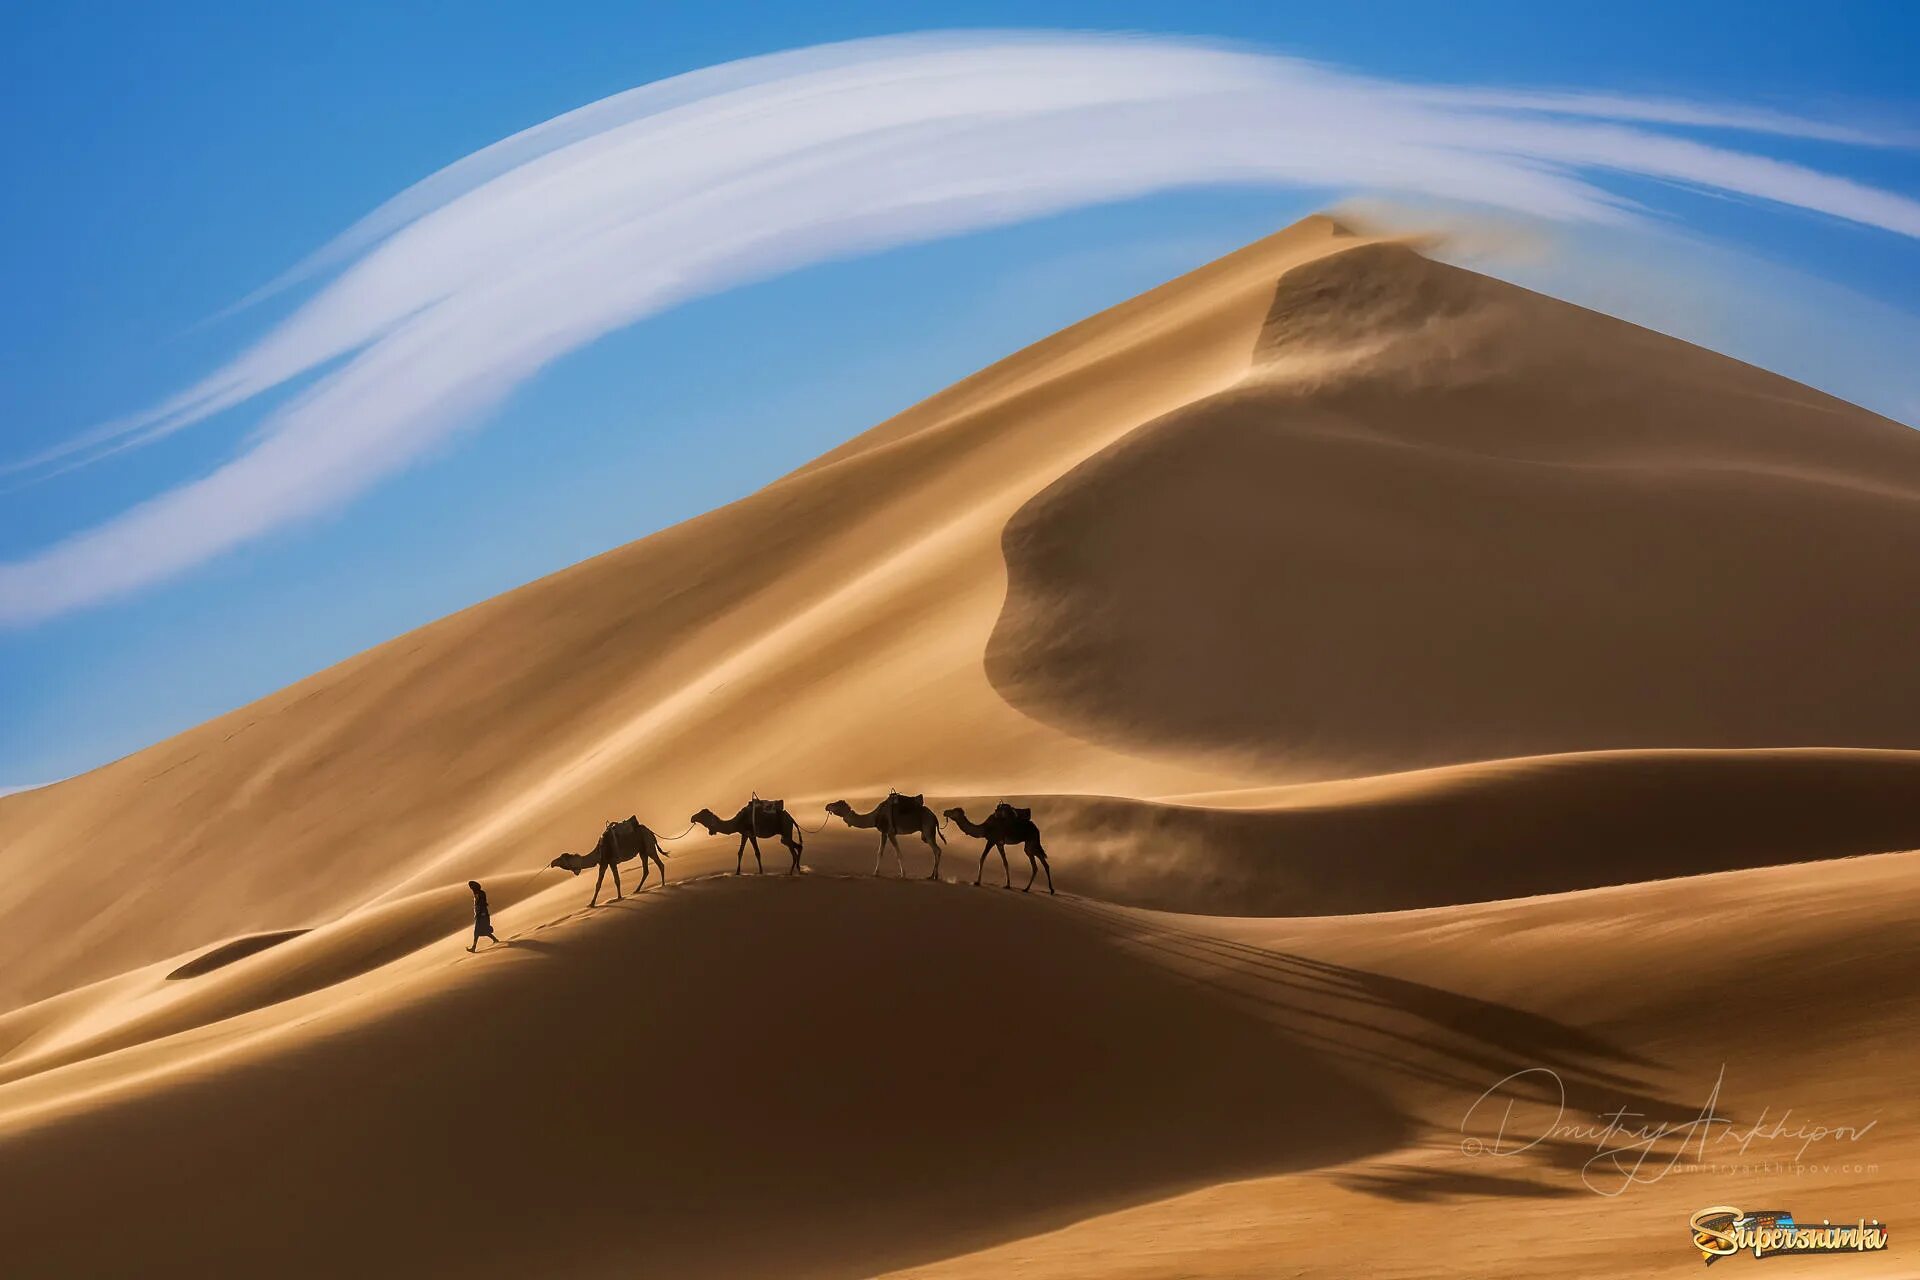 Фототур в Марокко. Пейзаж пустыни Кызылкум. Верблюд в пустыне. Большой караван